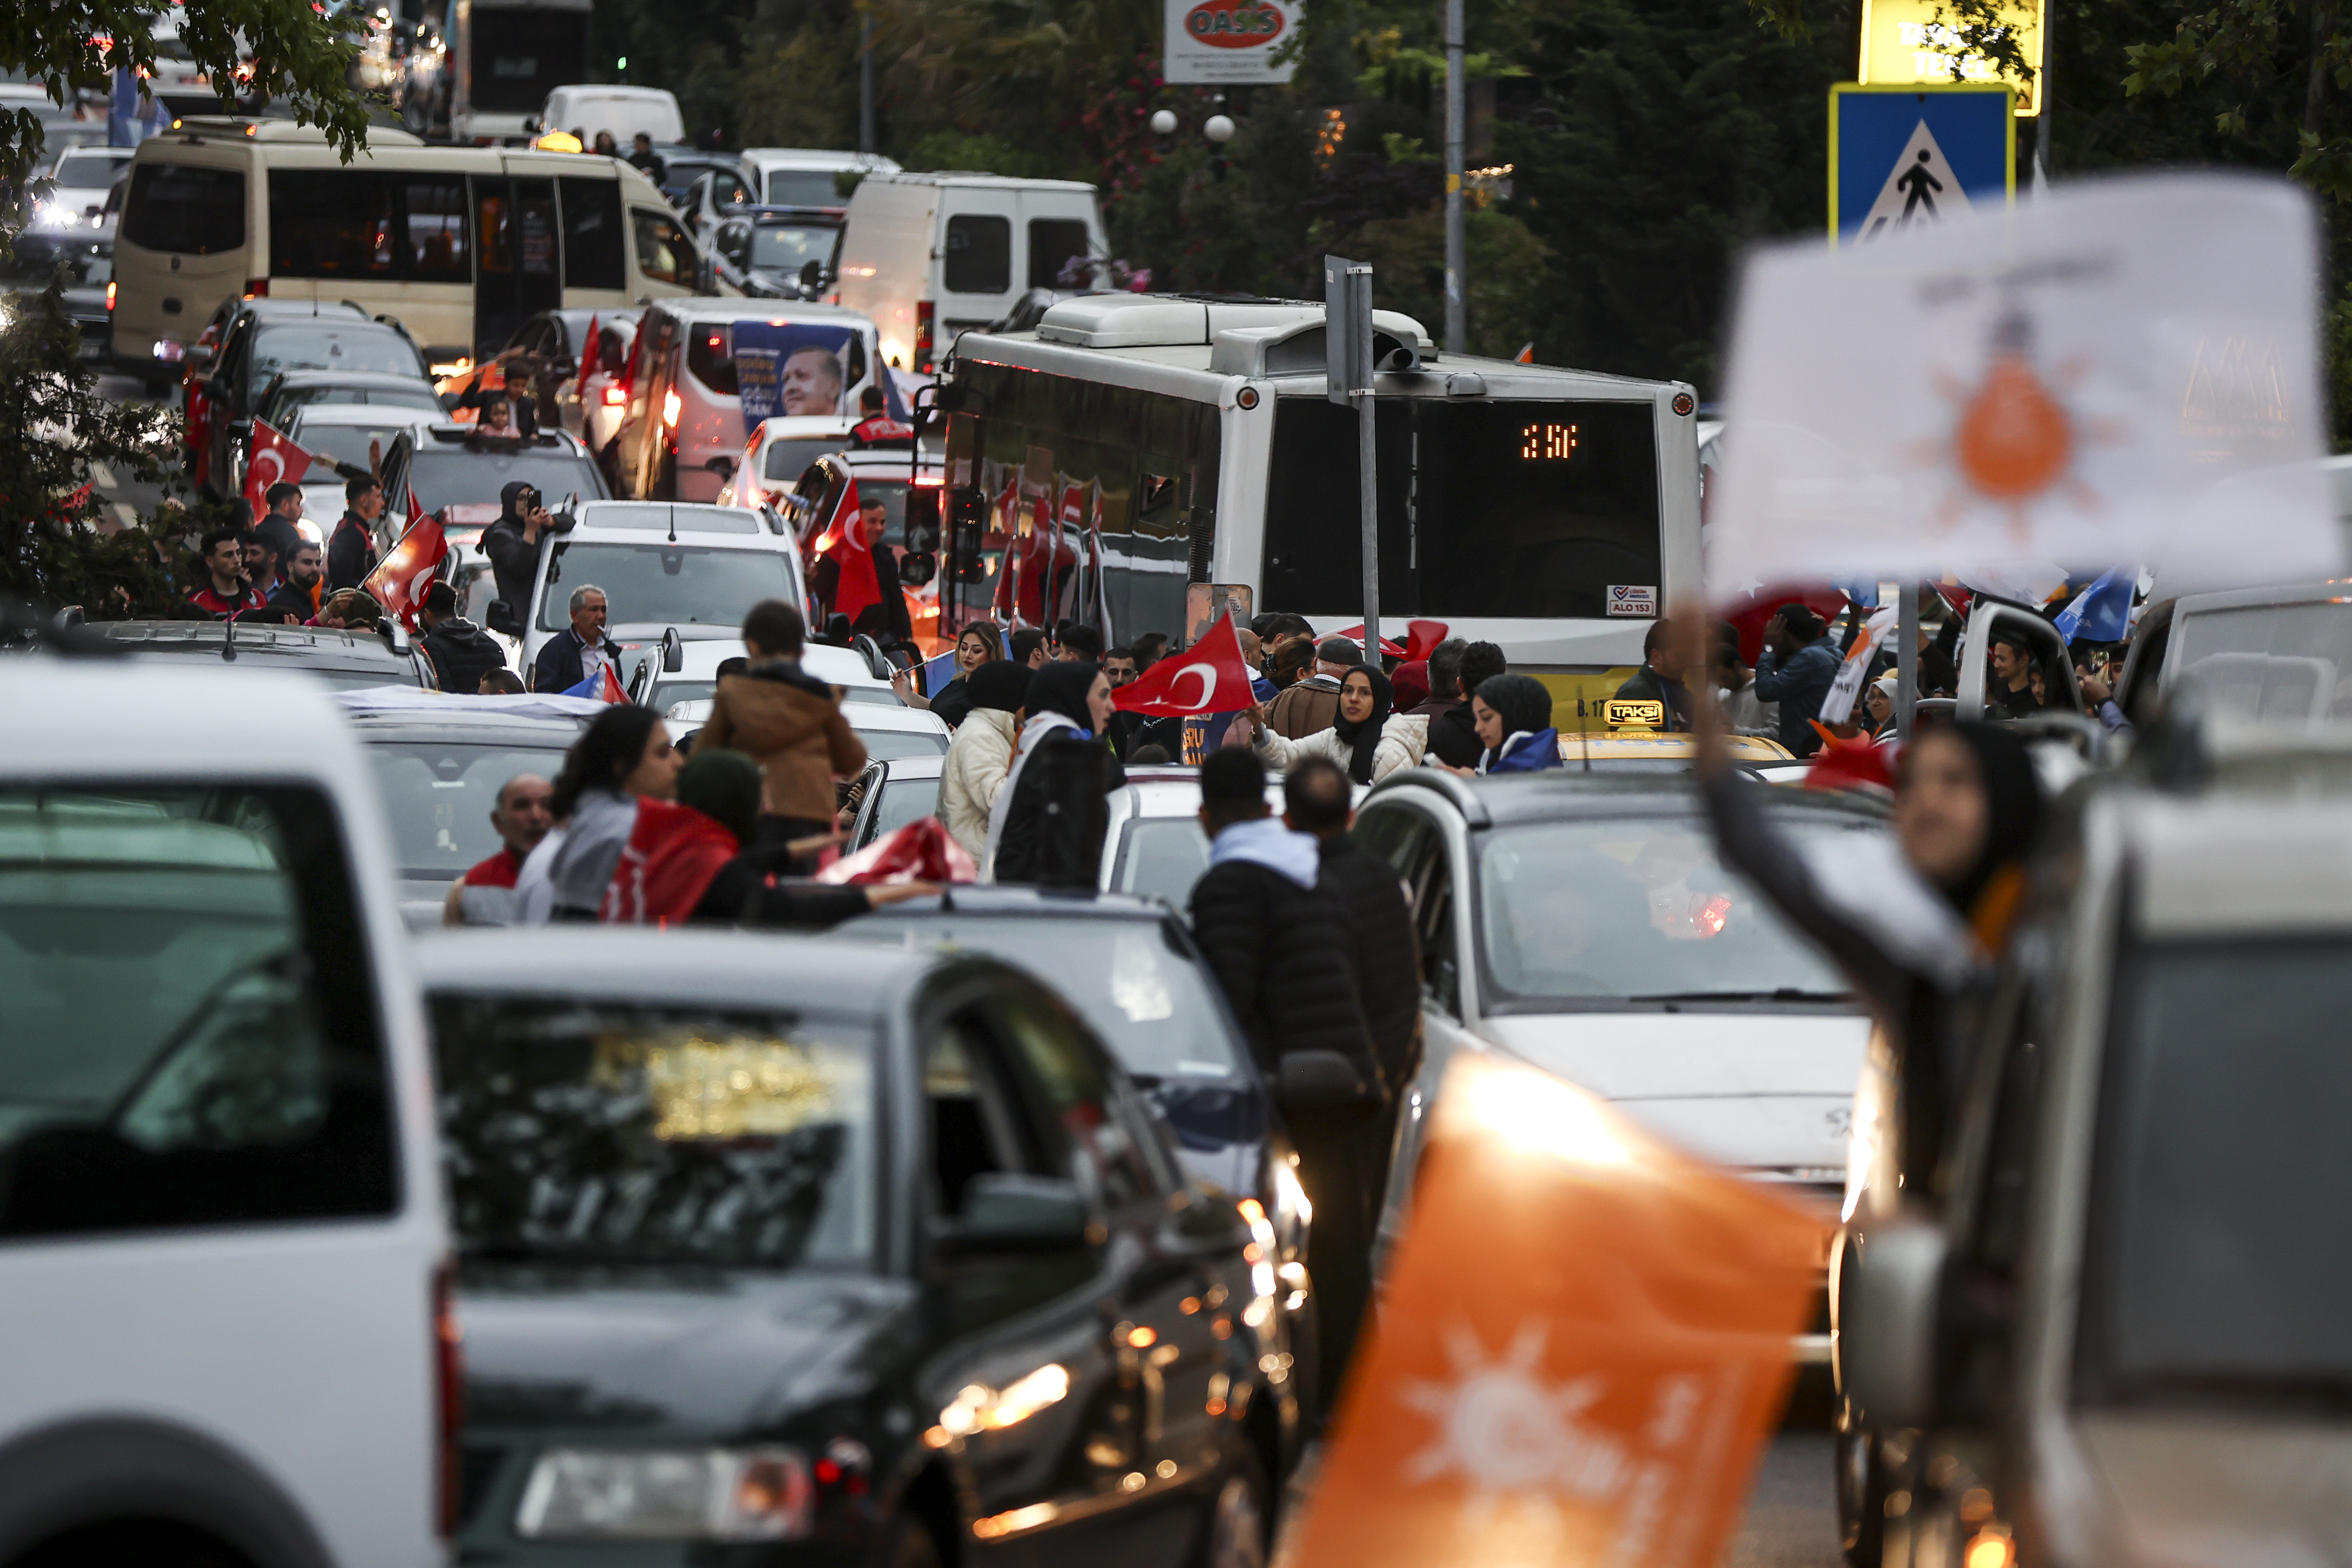 خرج أنصار أردوغان إلى الشوراع للاحتفال بالفوز بعدما أظهرت عمليات الفرز تفوقه على كليتشدار أوغلو - الأناضول